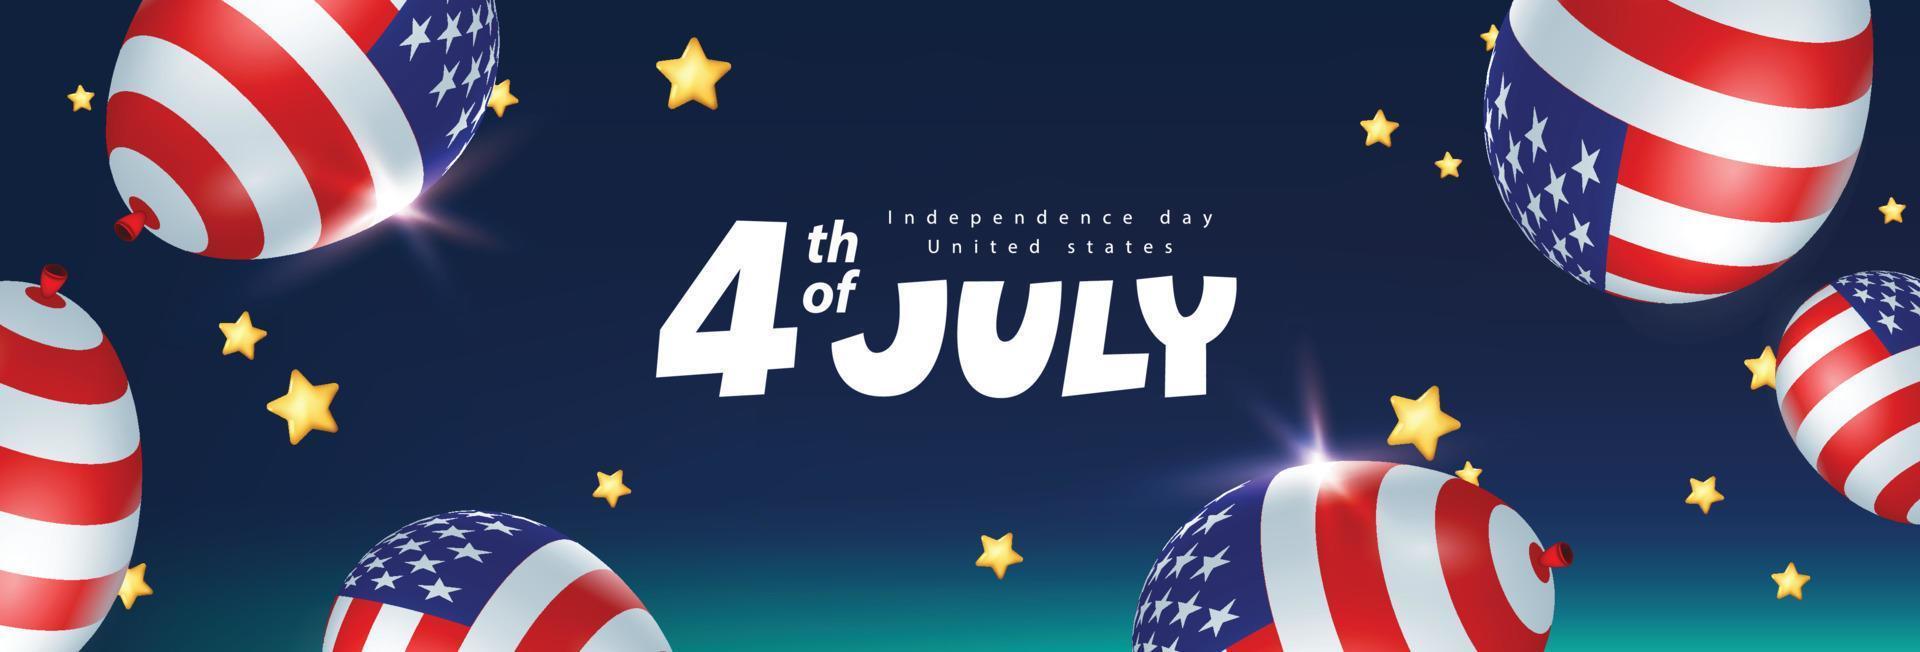 banner de celebración del día de la independencia de estados unidos en el cielo nocturno con globos americanos y estrellas doradas vector